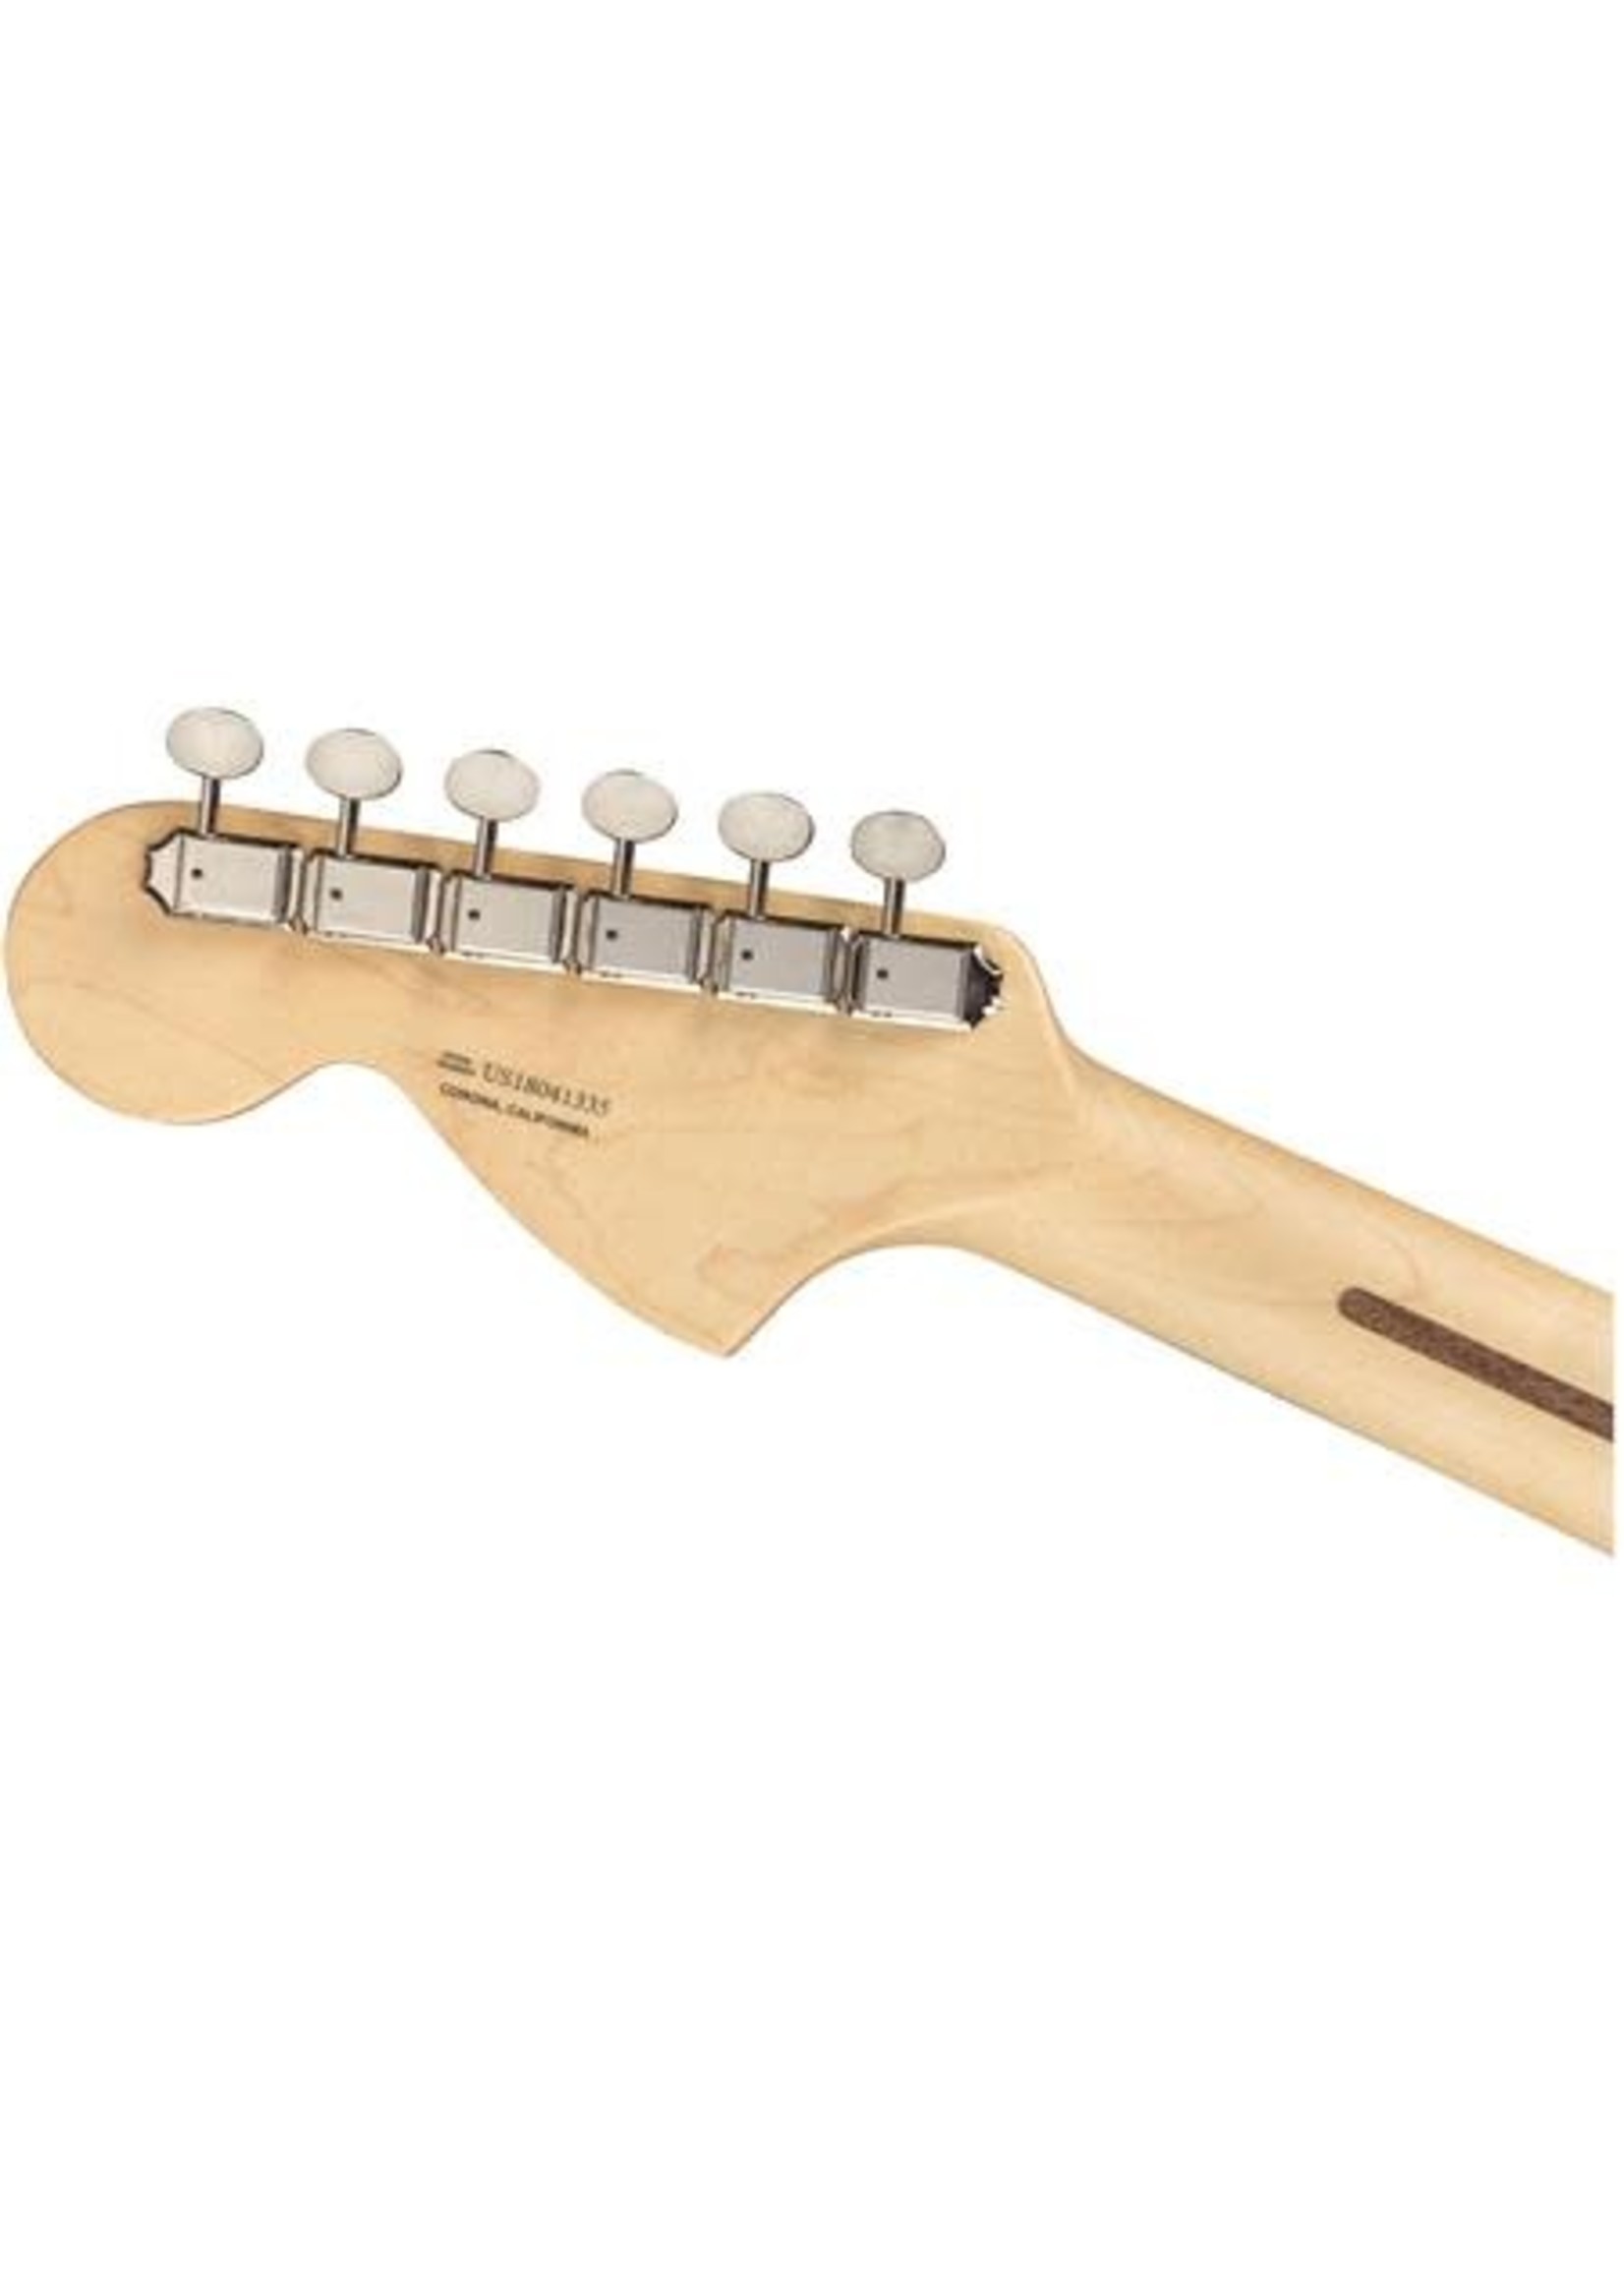 Fender Fender 0114920345 American Performer Stratocaster HSS Aubergine